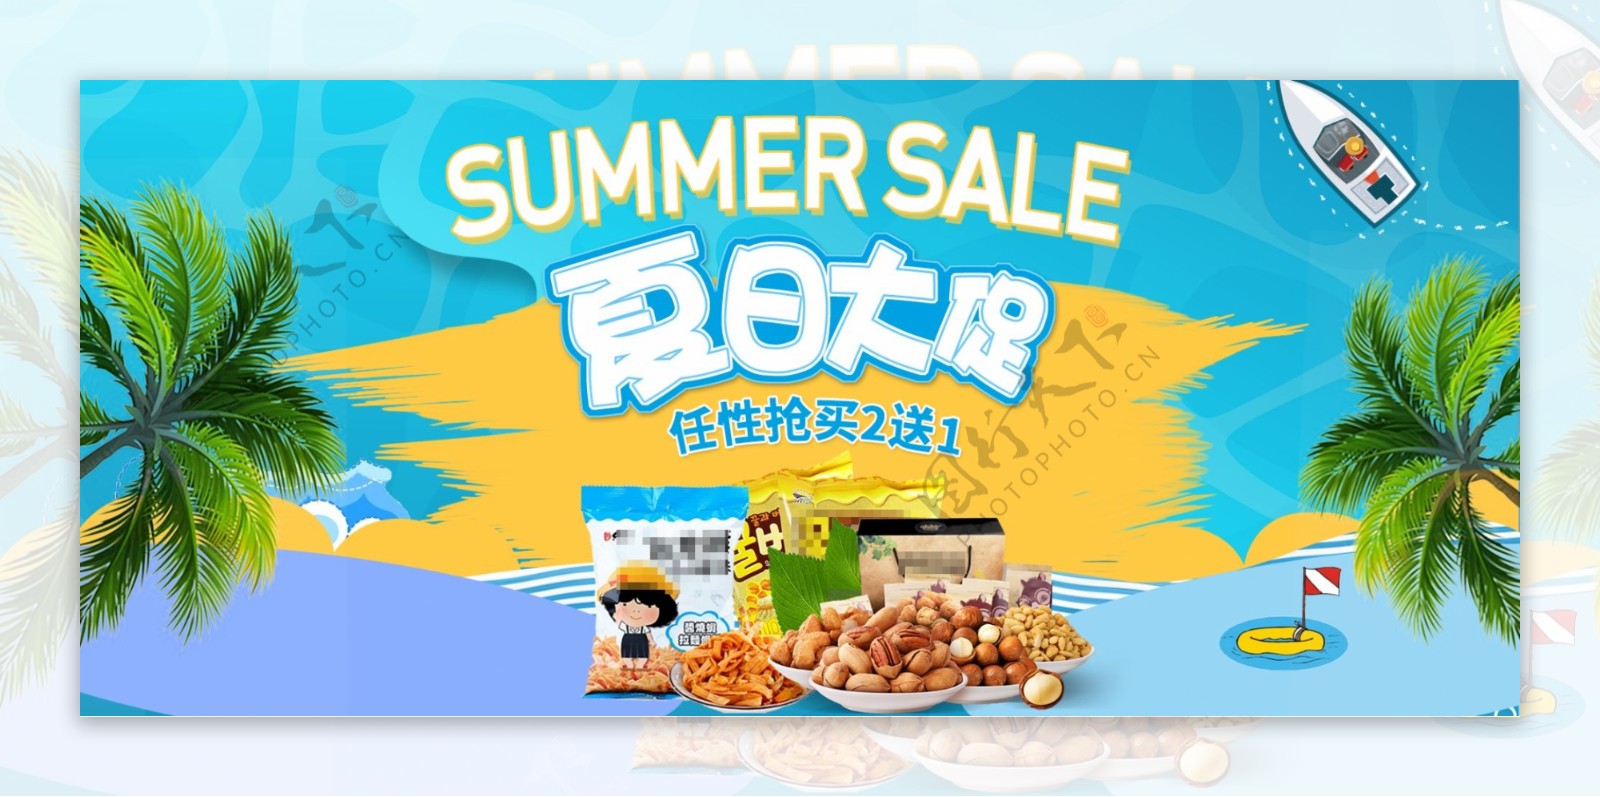 电商淘宝夏季美食食品零食海报banner